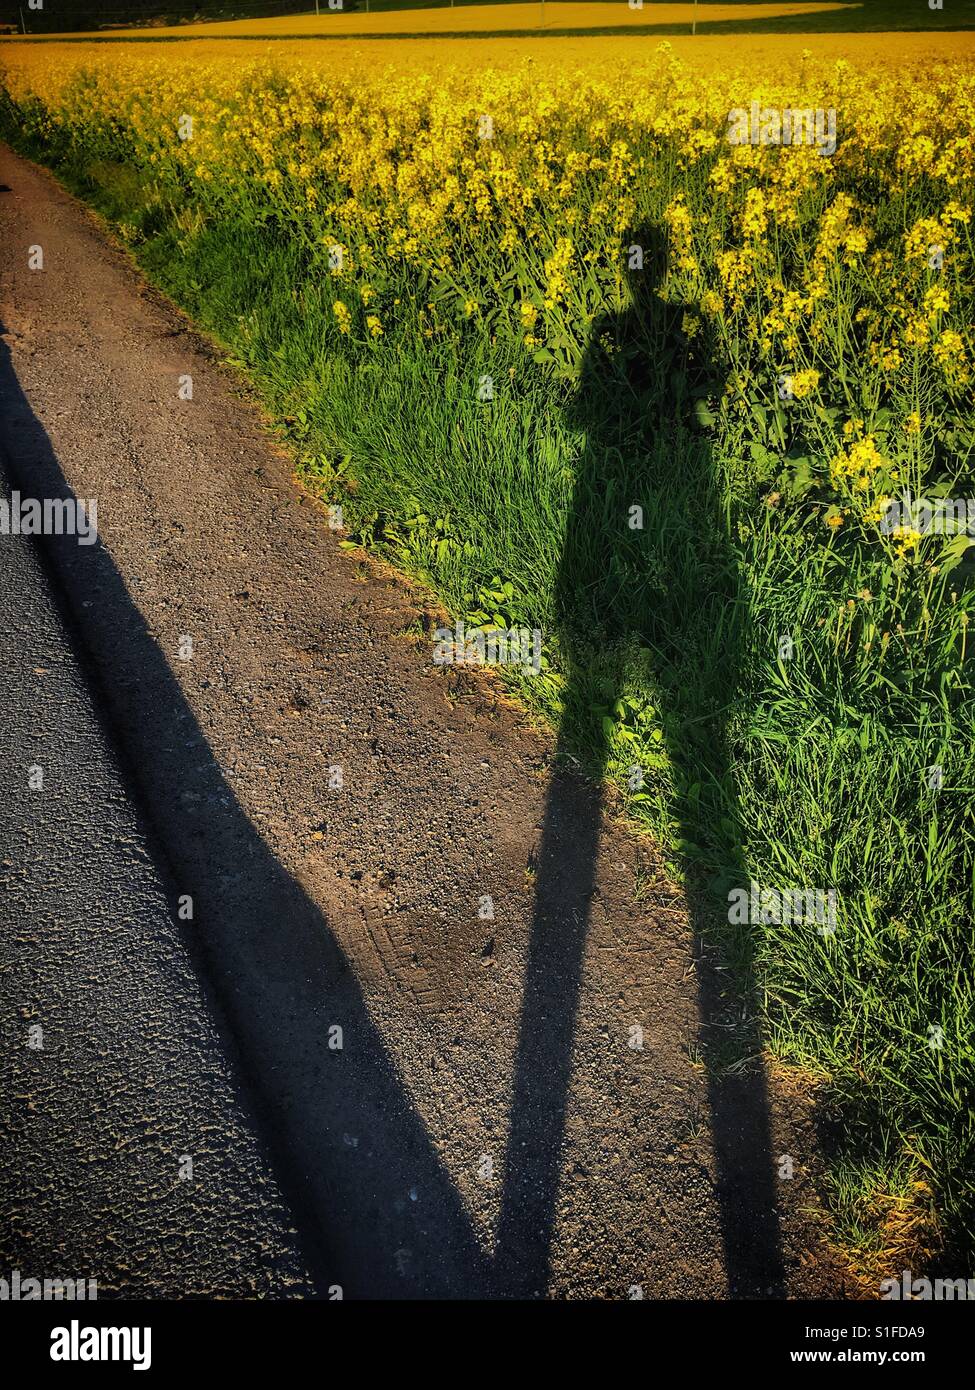 Schatten einer Frau auf einem gelben Raps Feld Stockfoto